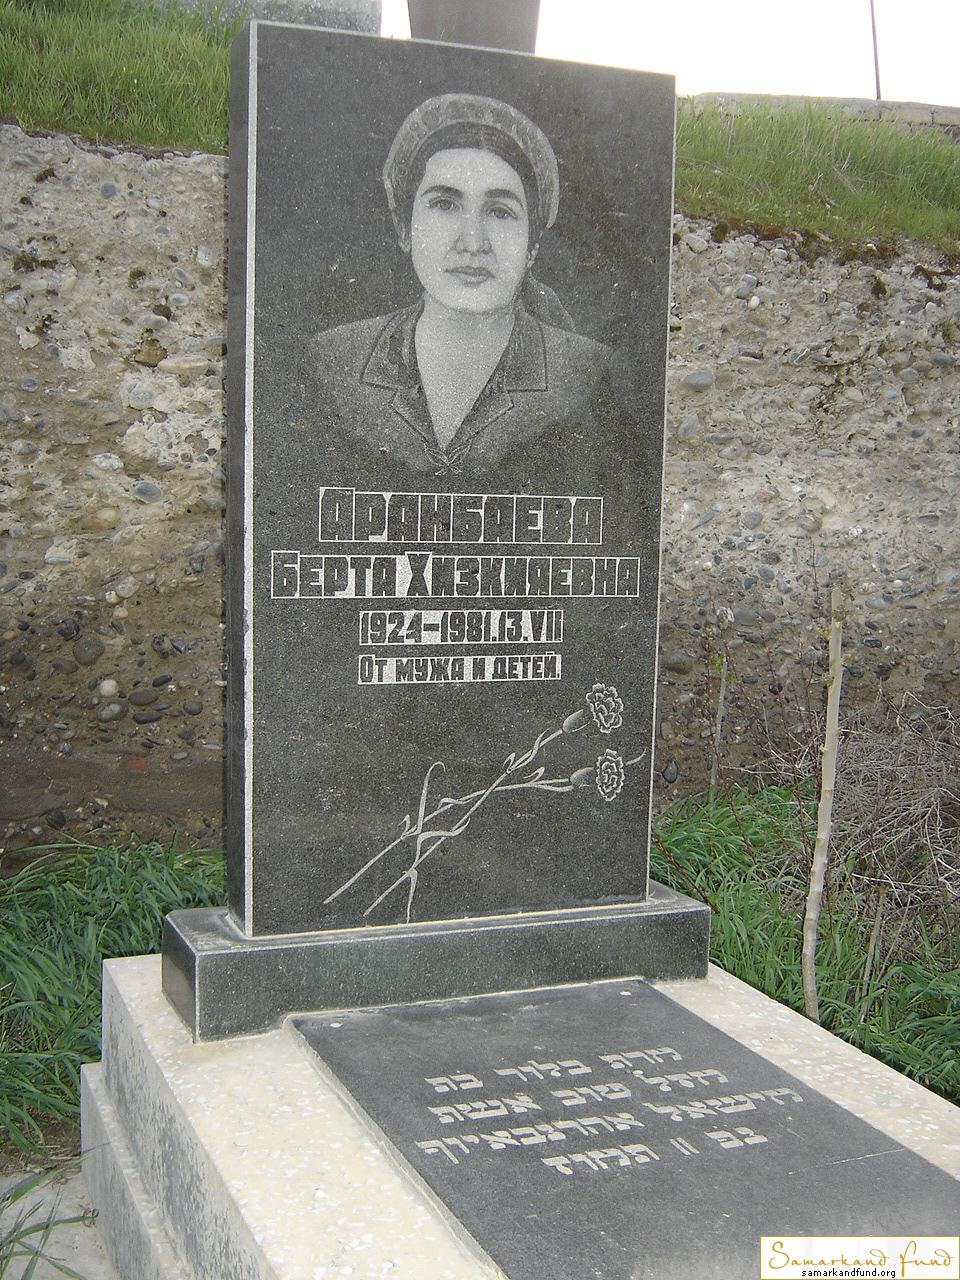 Аранбаева Берта Хизкияевна 1924 - 13.08.1981 зах.270.616  №12.JPG